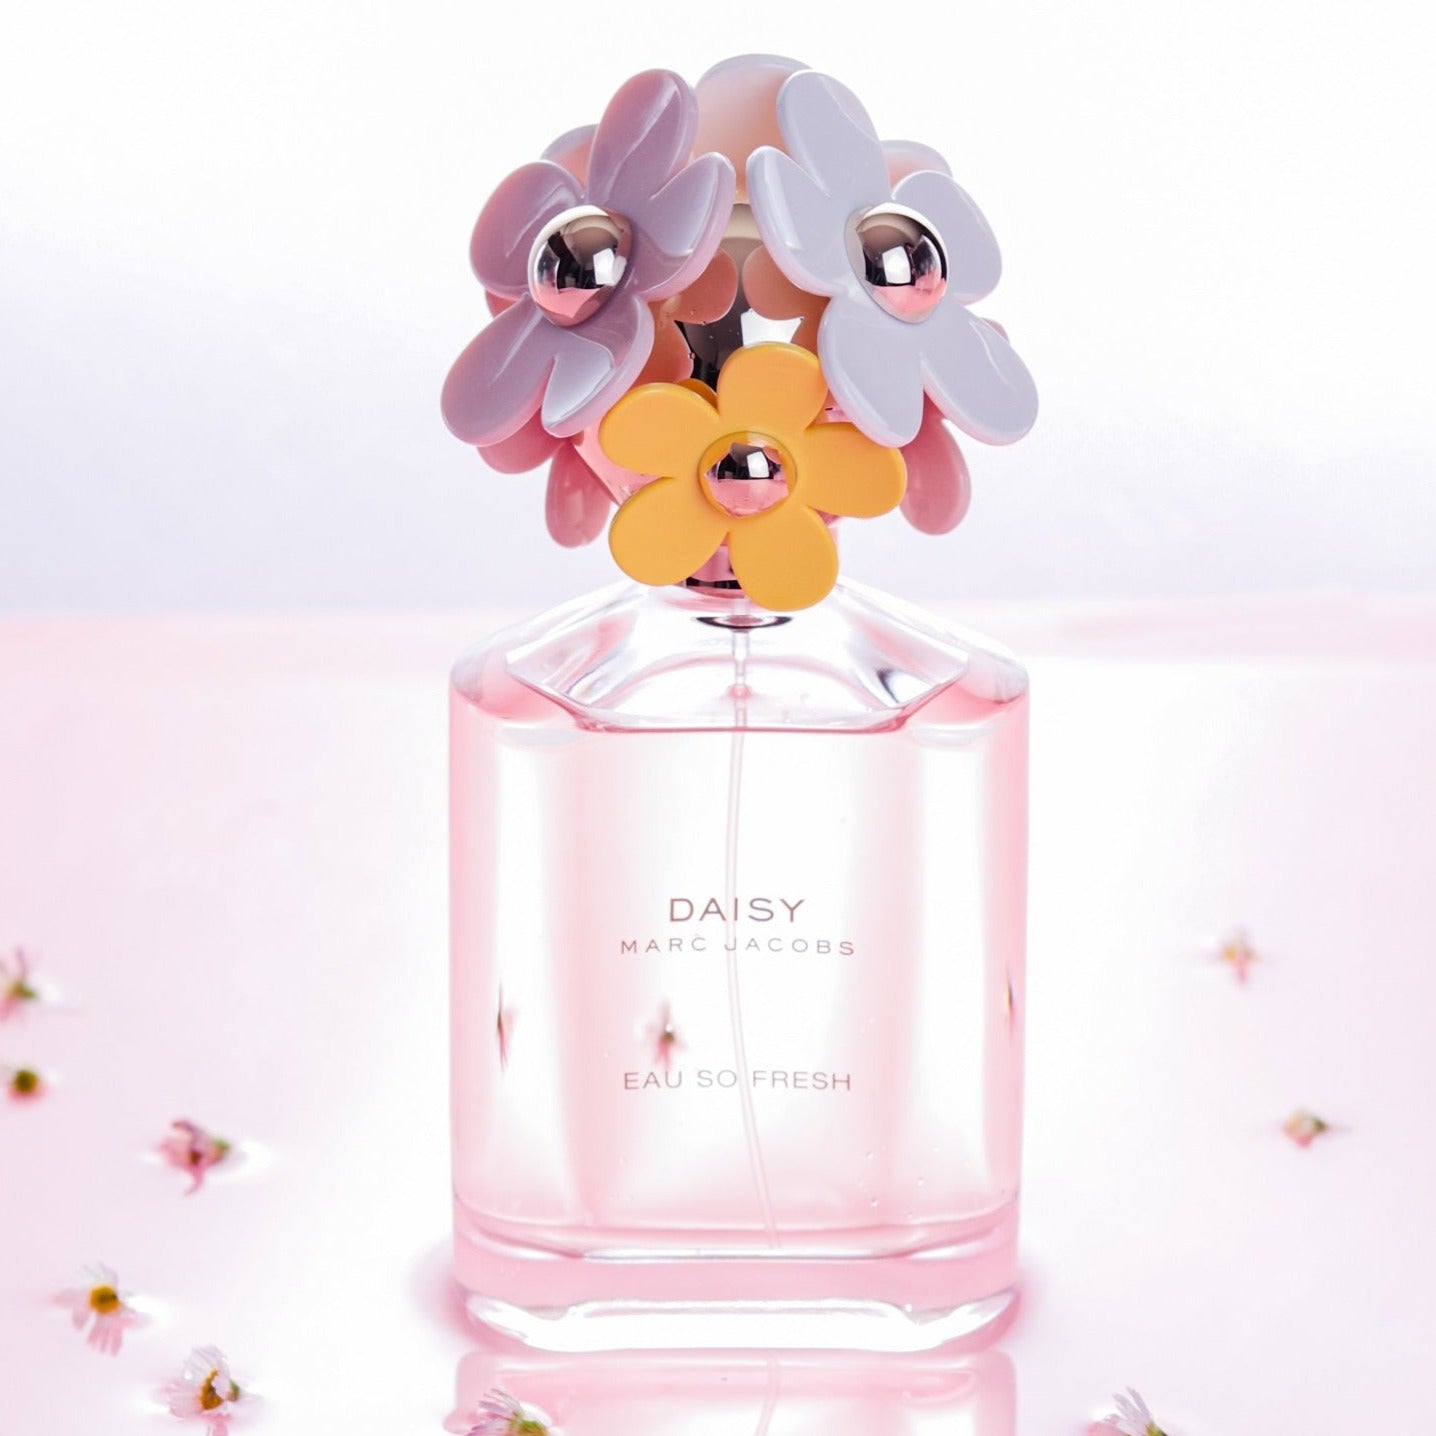 Marc Jacobs Daisy Eau So Fresh EDT | My Perfume Shop Australia